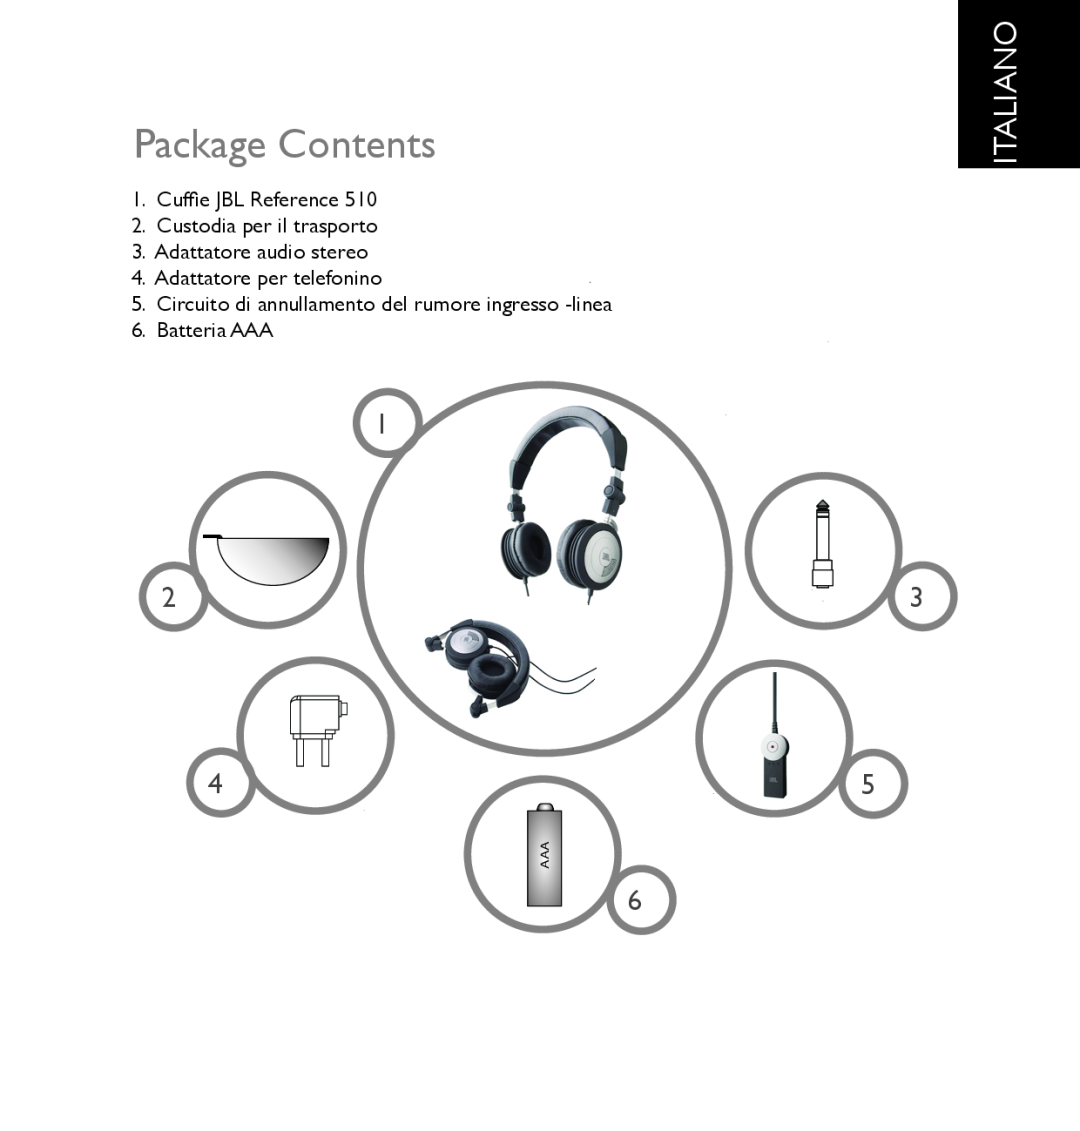 JBL 510 Package Contents, Italiano, Cuffie JBL Reference, Custodia per il trasporto, Adattatore audio stereo, Batteria AAA 